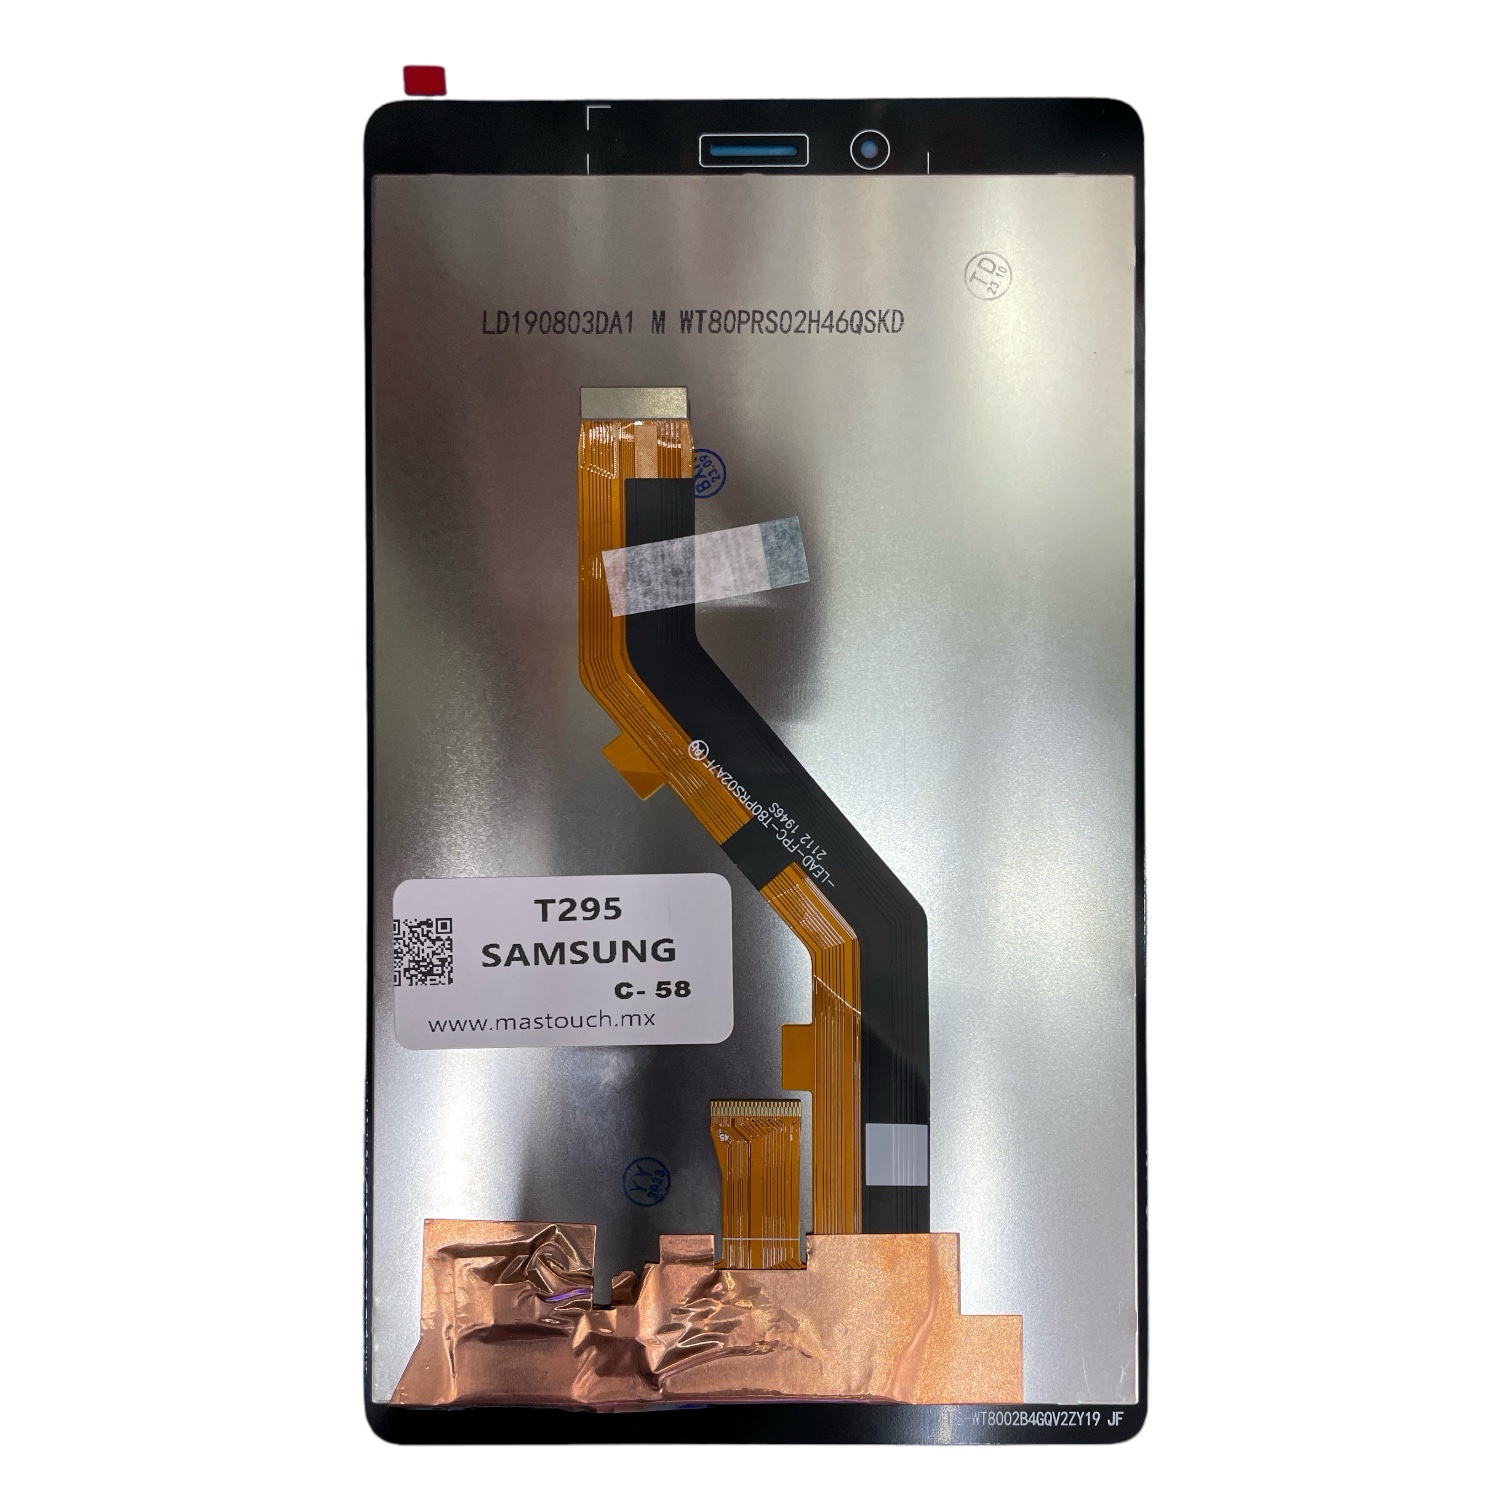 Samsung Galaxy Tab A 8.0 2019 SM T295